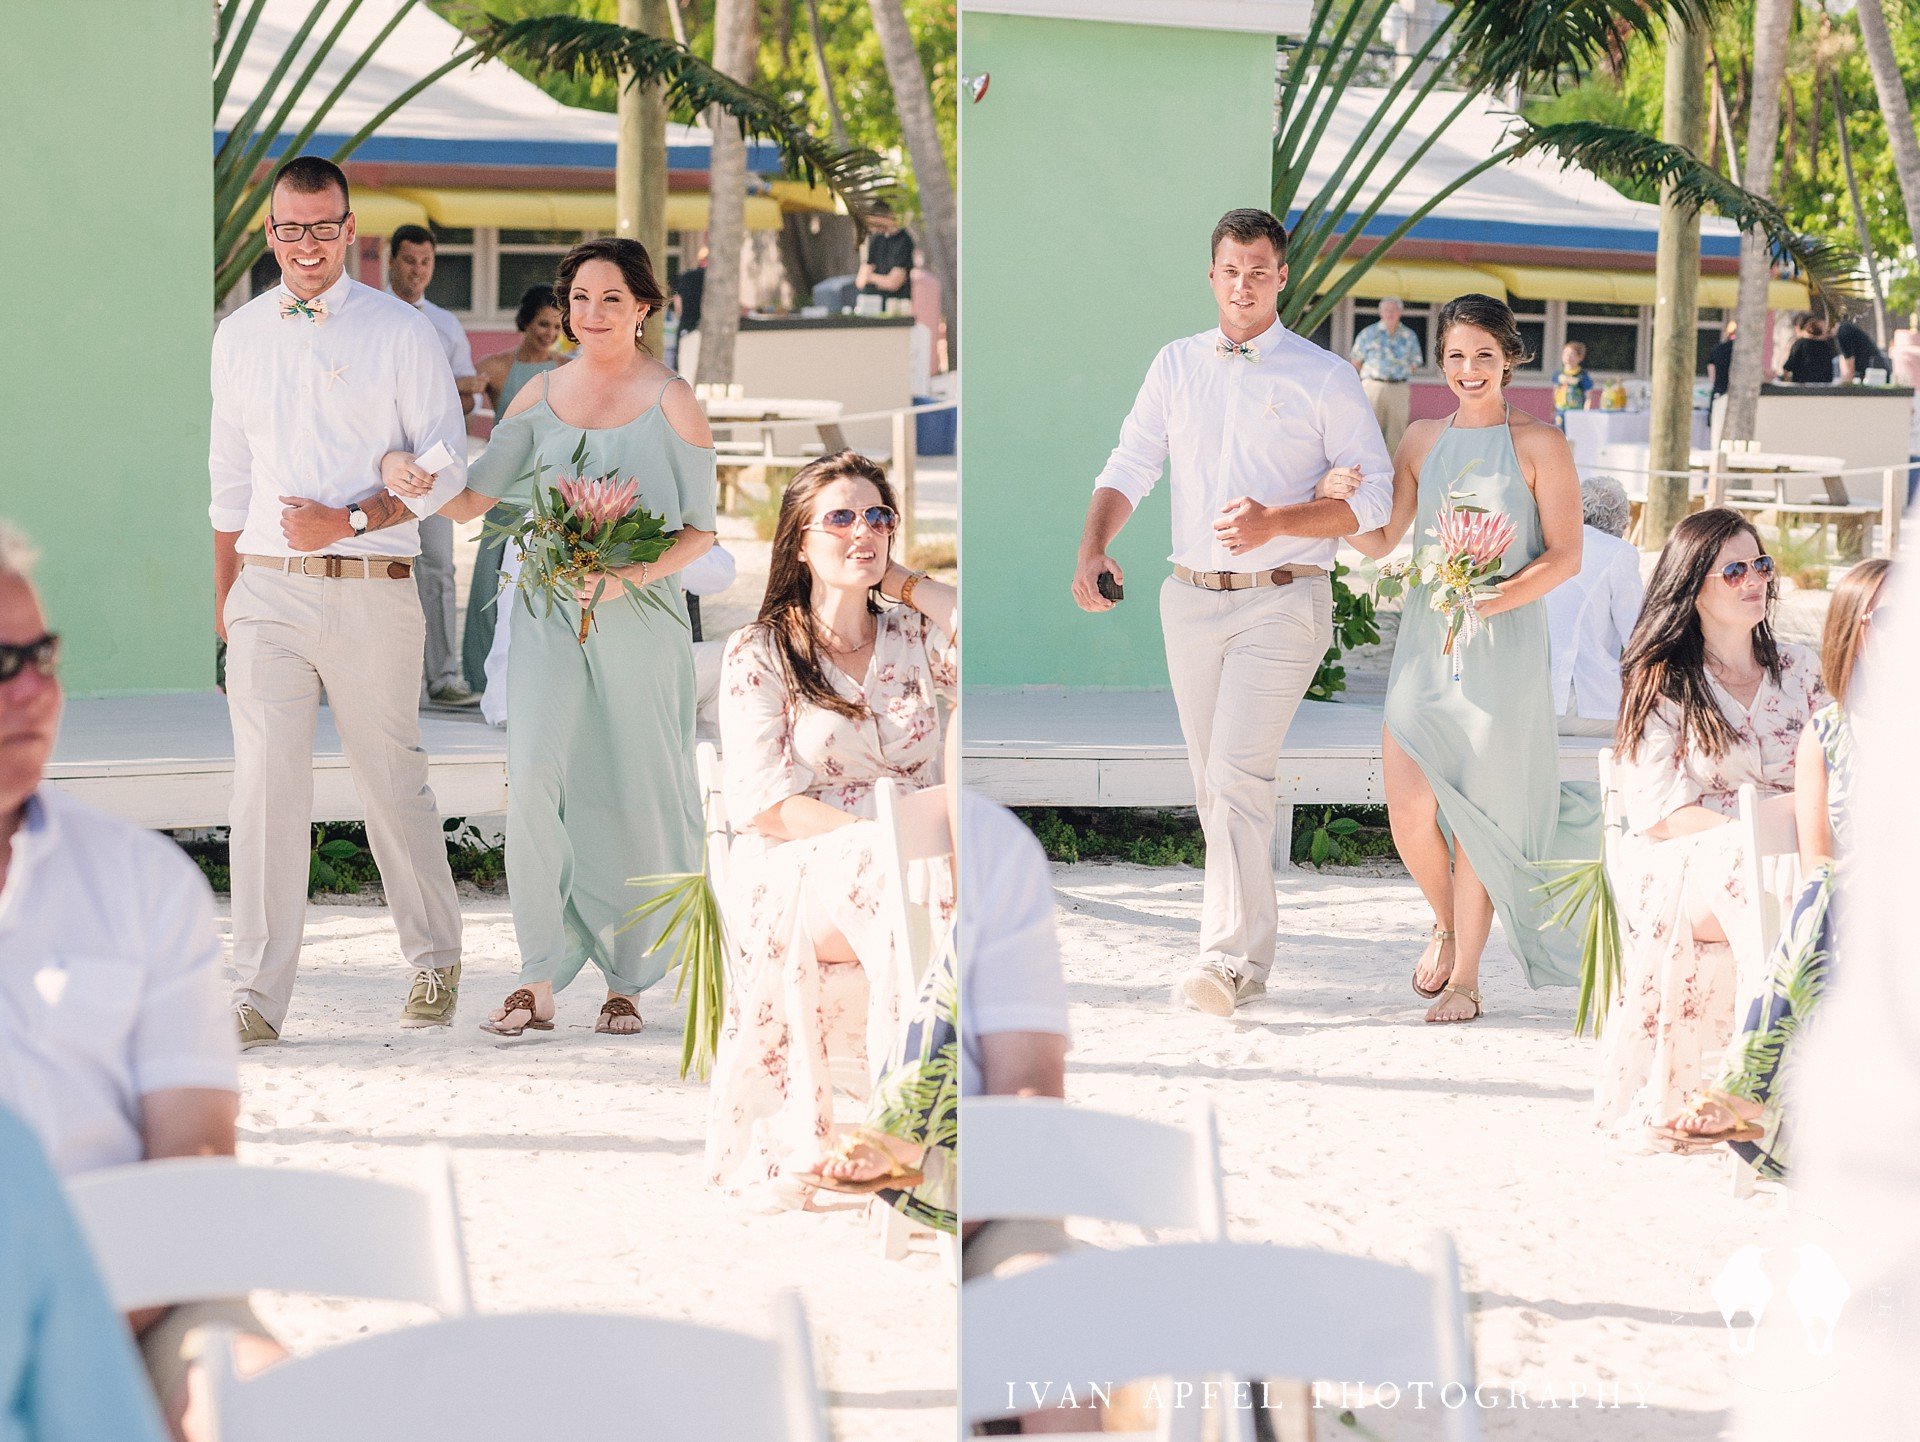 Drop Anchor Resort Islamorada Wedding Florida Keys Ivan Apfel Photography Kaitlin and Ben_0248.jpg